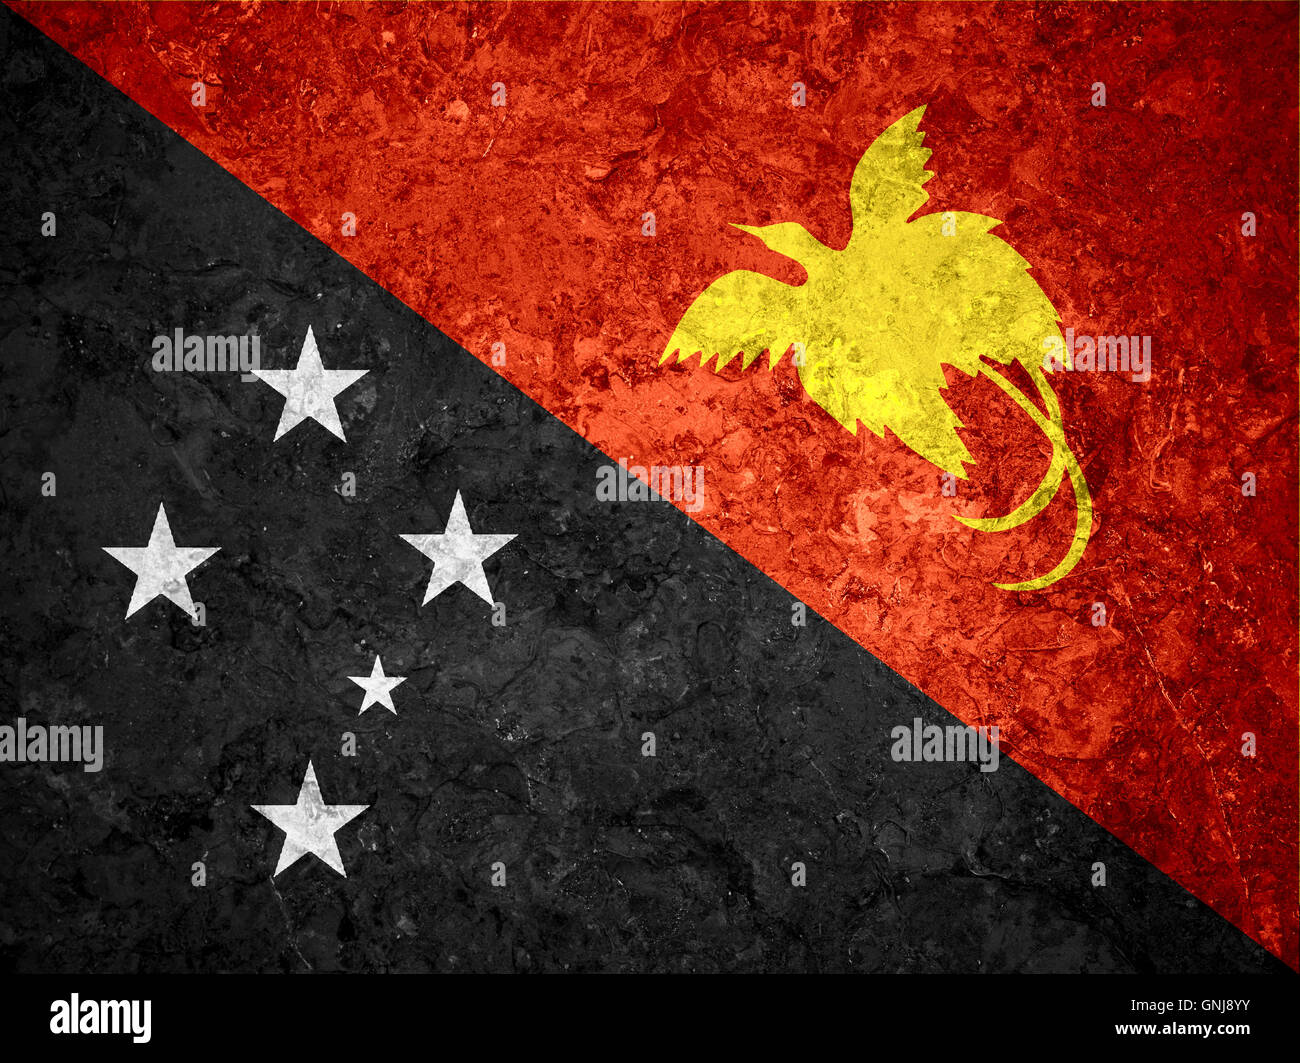 Lá cờ Papua New Guinea mang trong mình nhiều ý nghĩa và tượng trưng. Được biết đến như một biểu tượng quốc tế của đất nước Papua New Guinea, bạn sẽ không muốn bỏ lỡ cơ hội chiêm ngưỡng nó qua hình ảnh của chúng tôi.